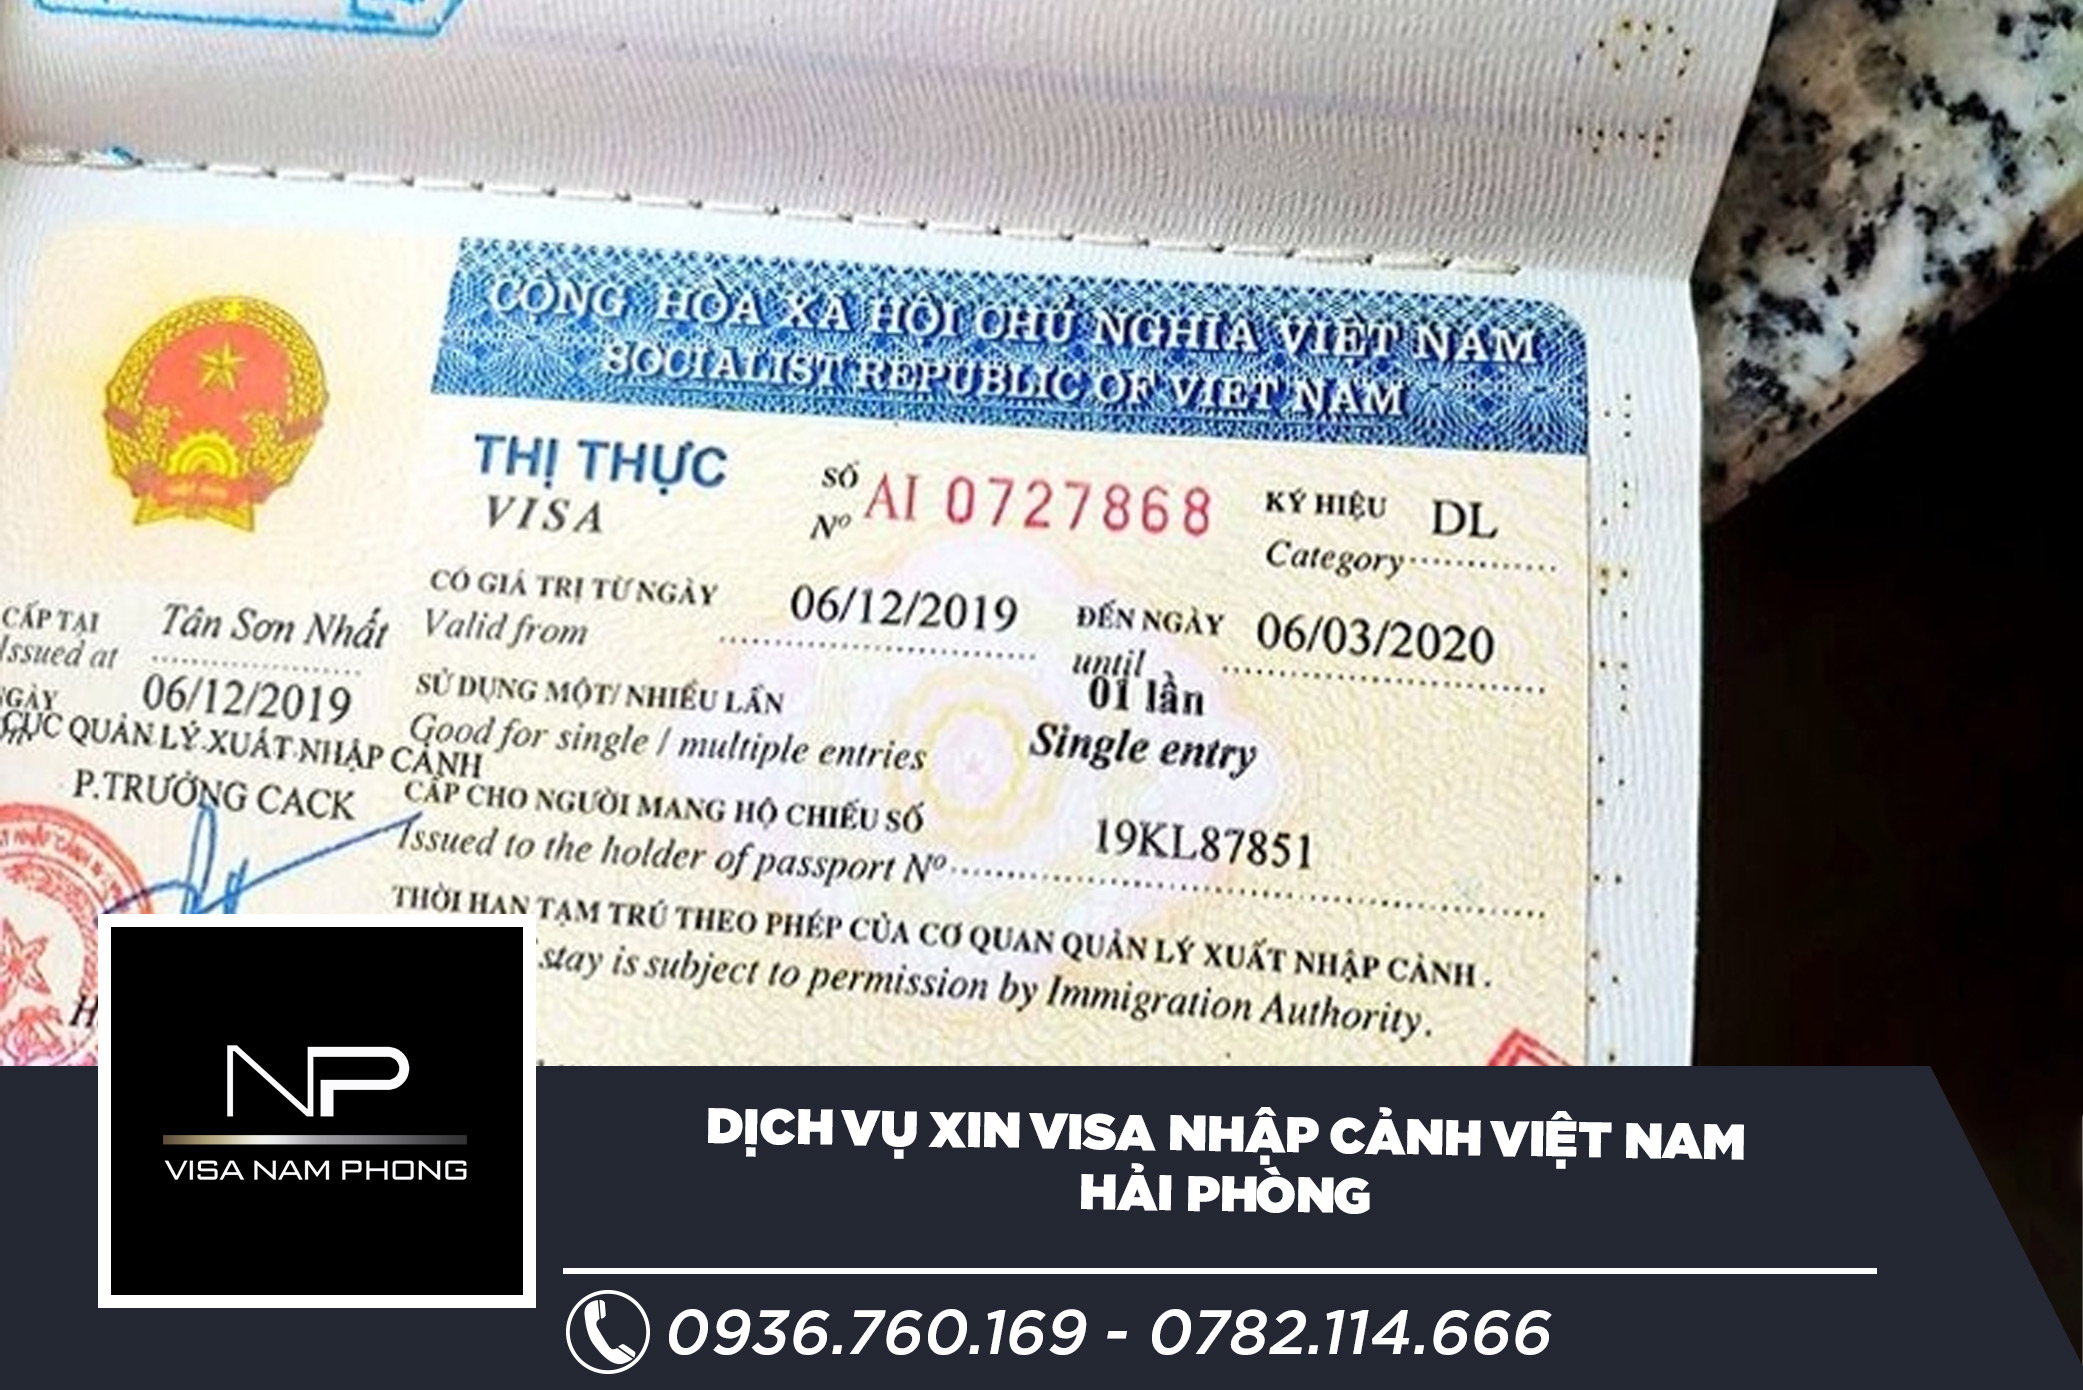 Dịch vụ xin visa nhập cảnh Việt Nam Hải Phòng